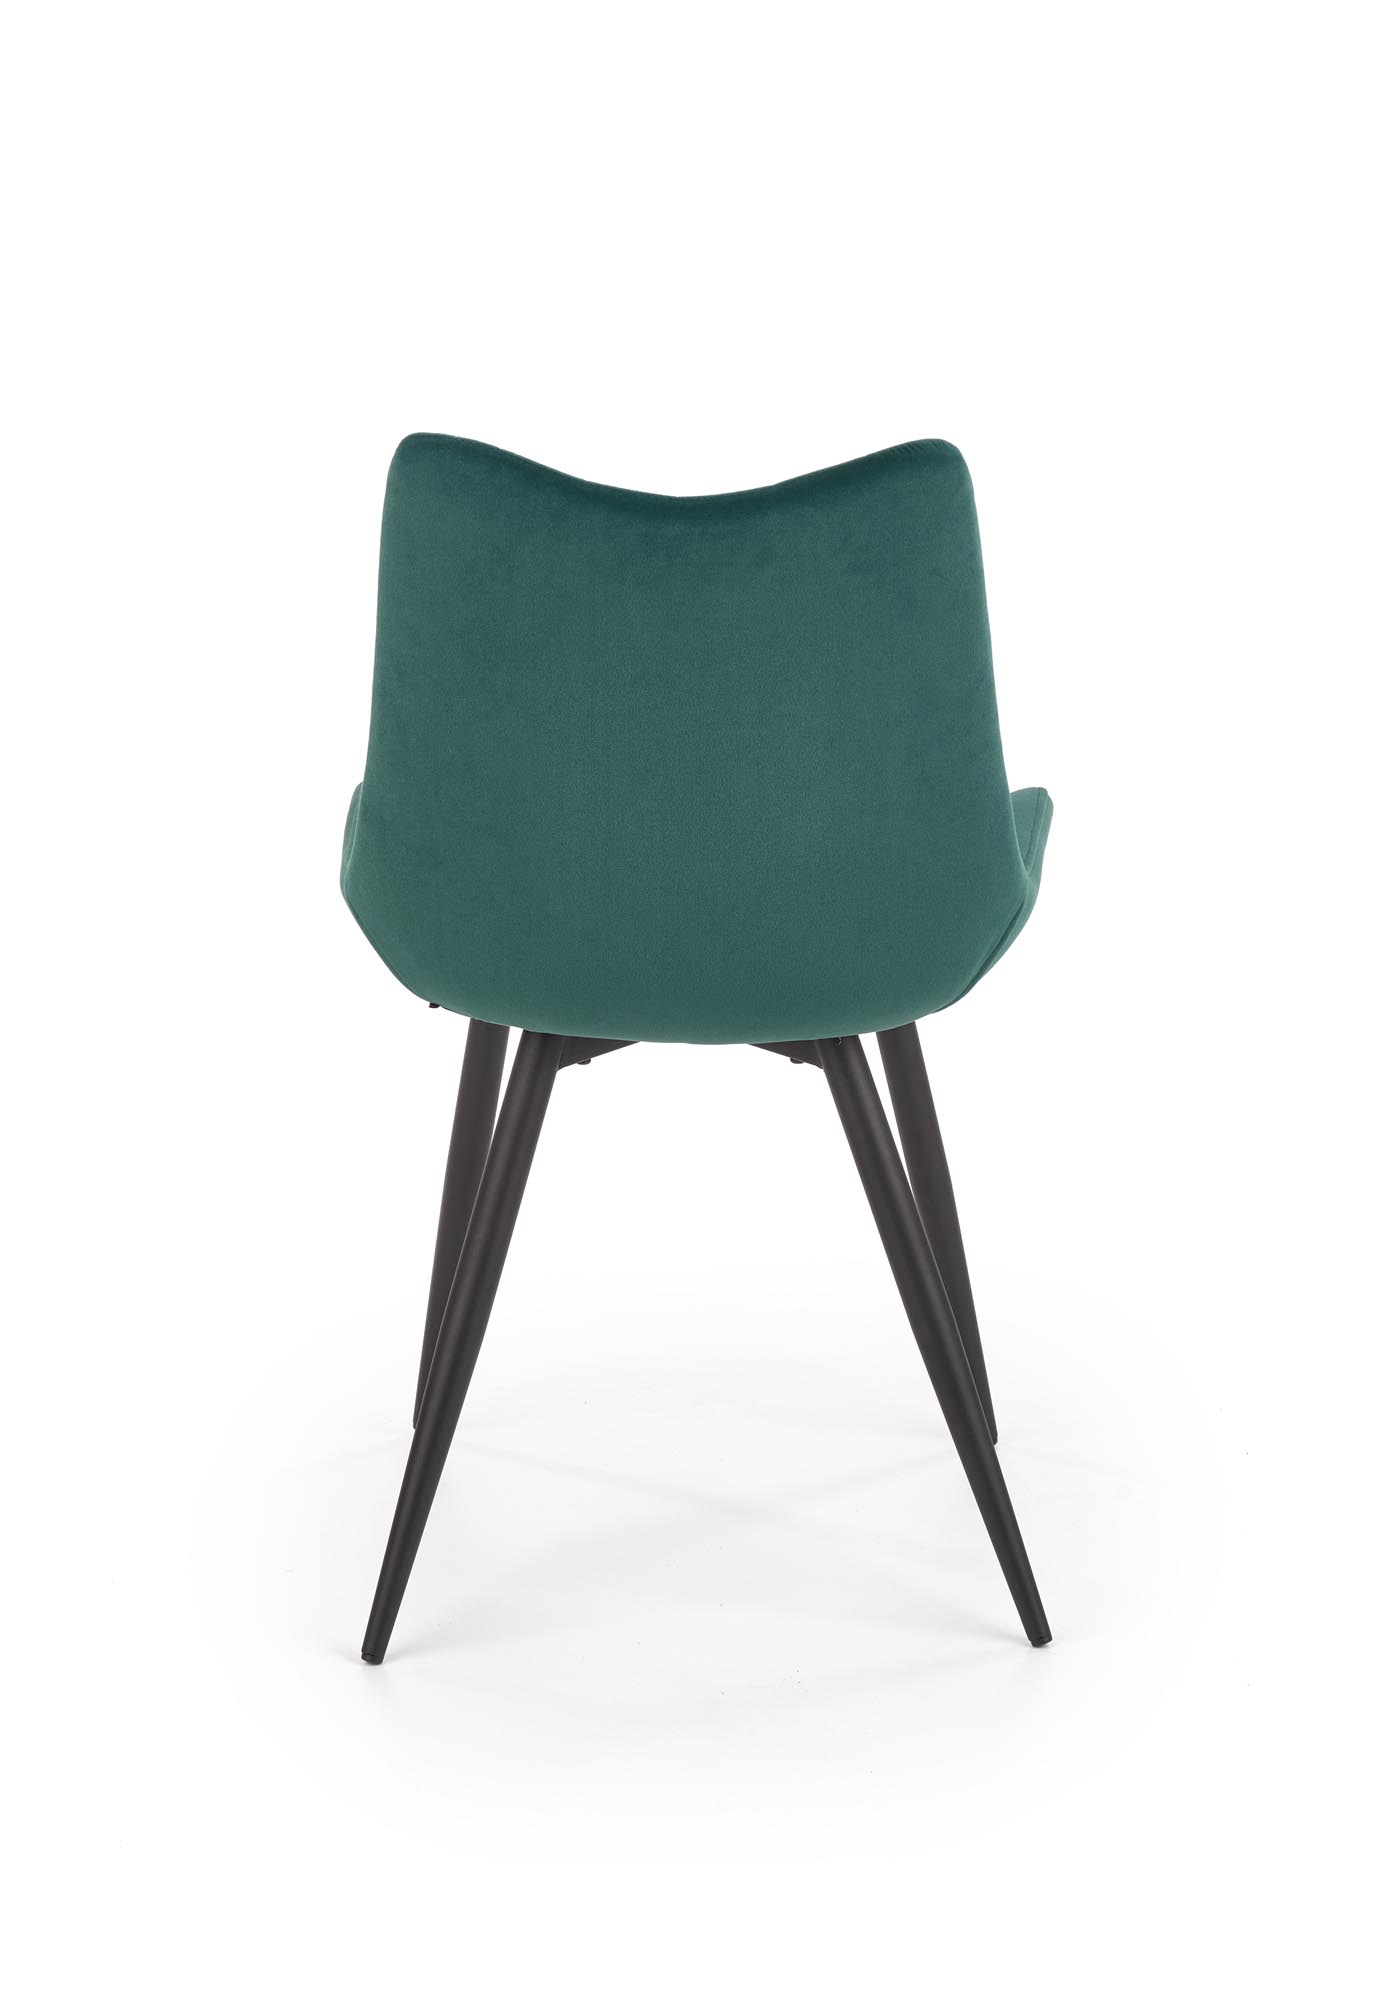 Čalúnená stolička K388 - tmavý Zelený Stolička čalúnená k388 - tmavý Zelený